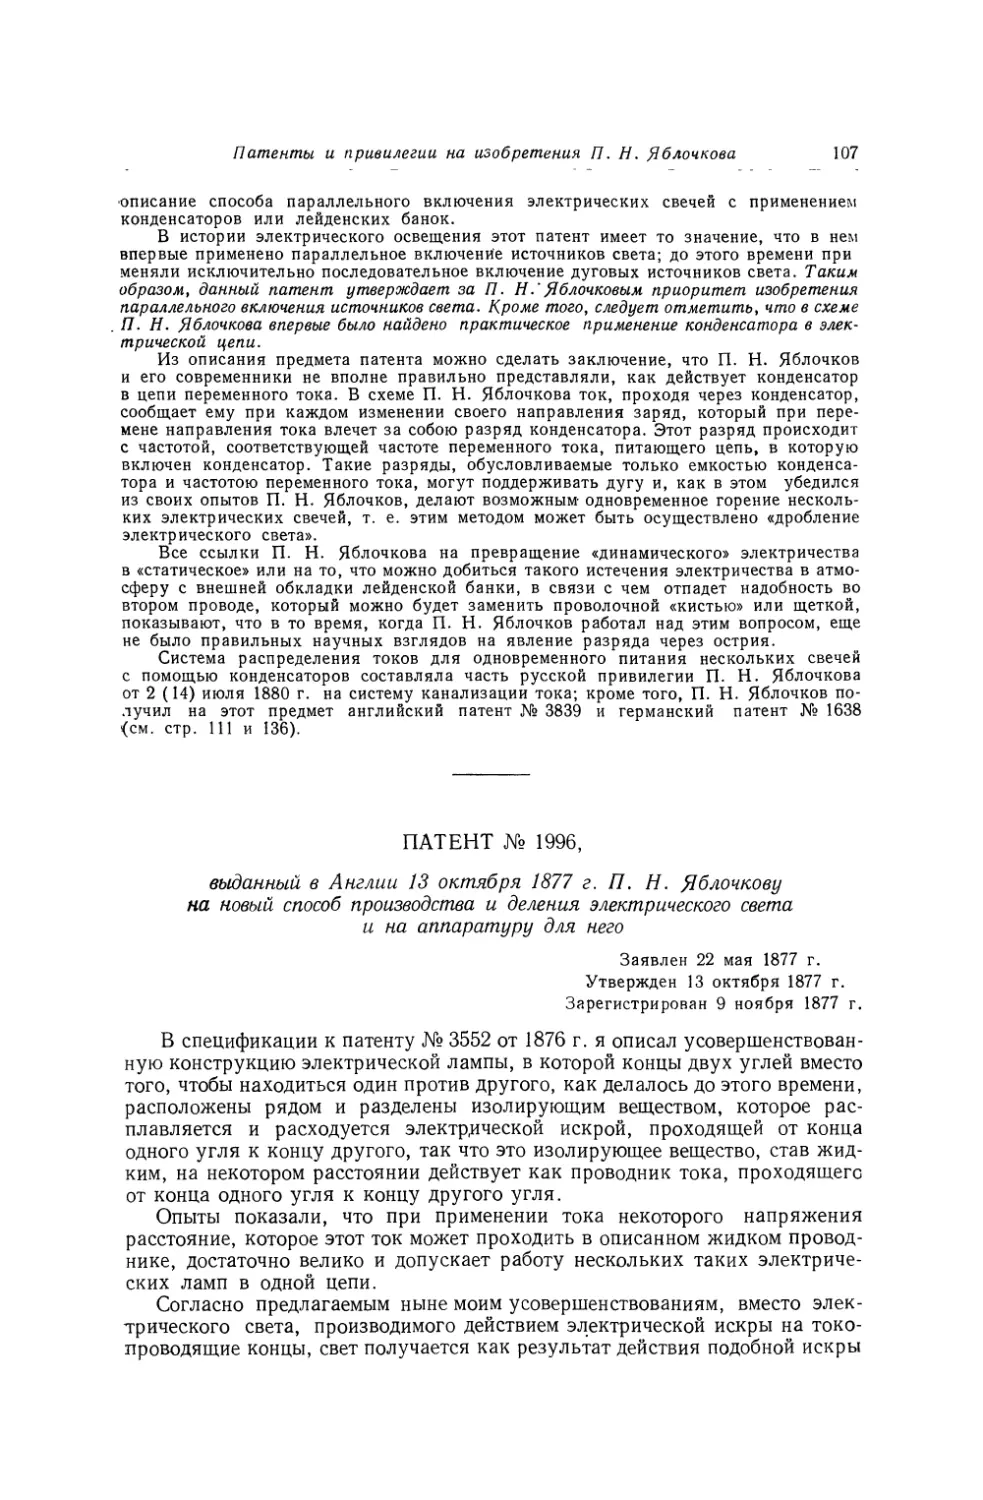 Патент № 1996, выданный в Англии 13 октября 1877 г. П. Н. Яблочкову на новый способ производства и деления электрического света и на аппаратуру для него